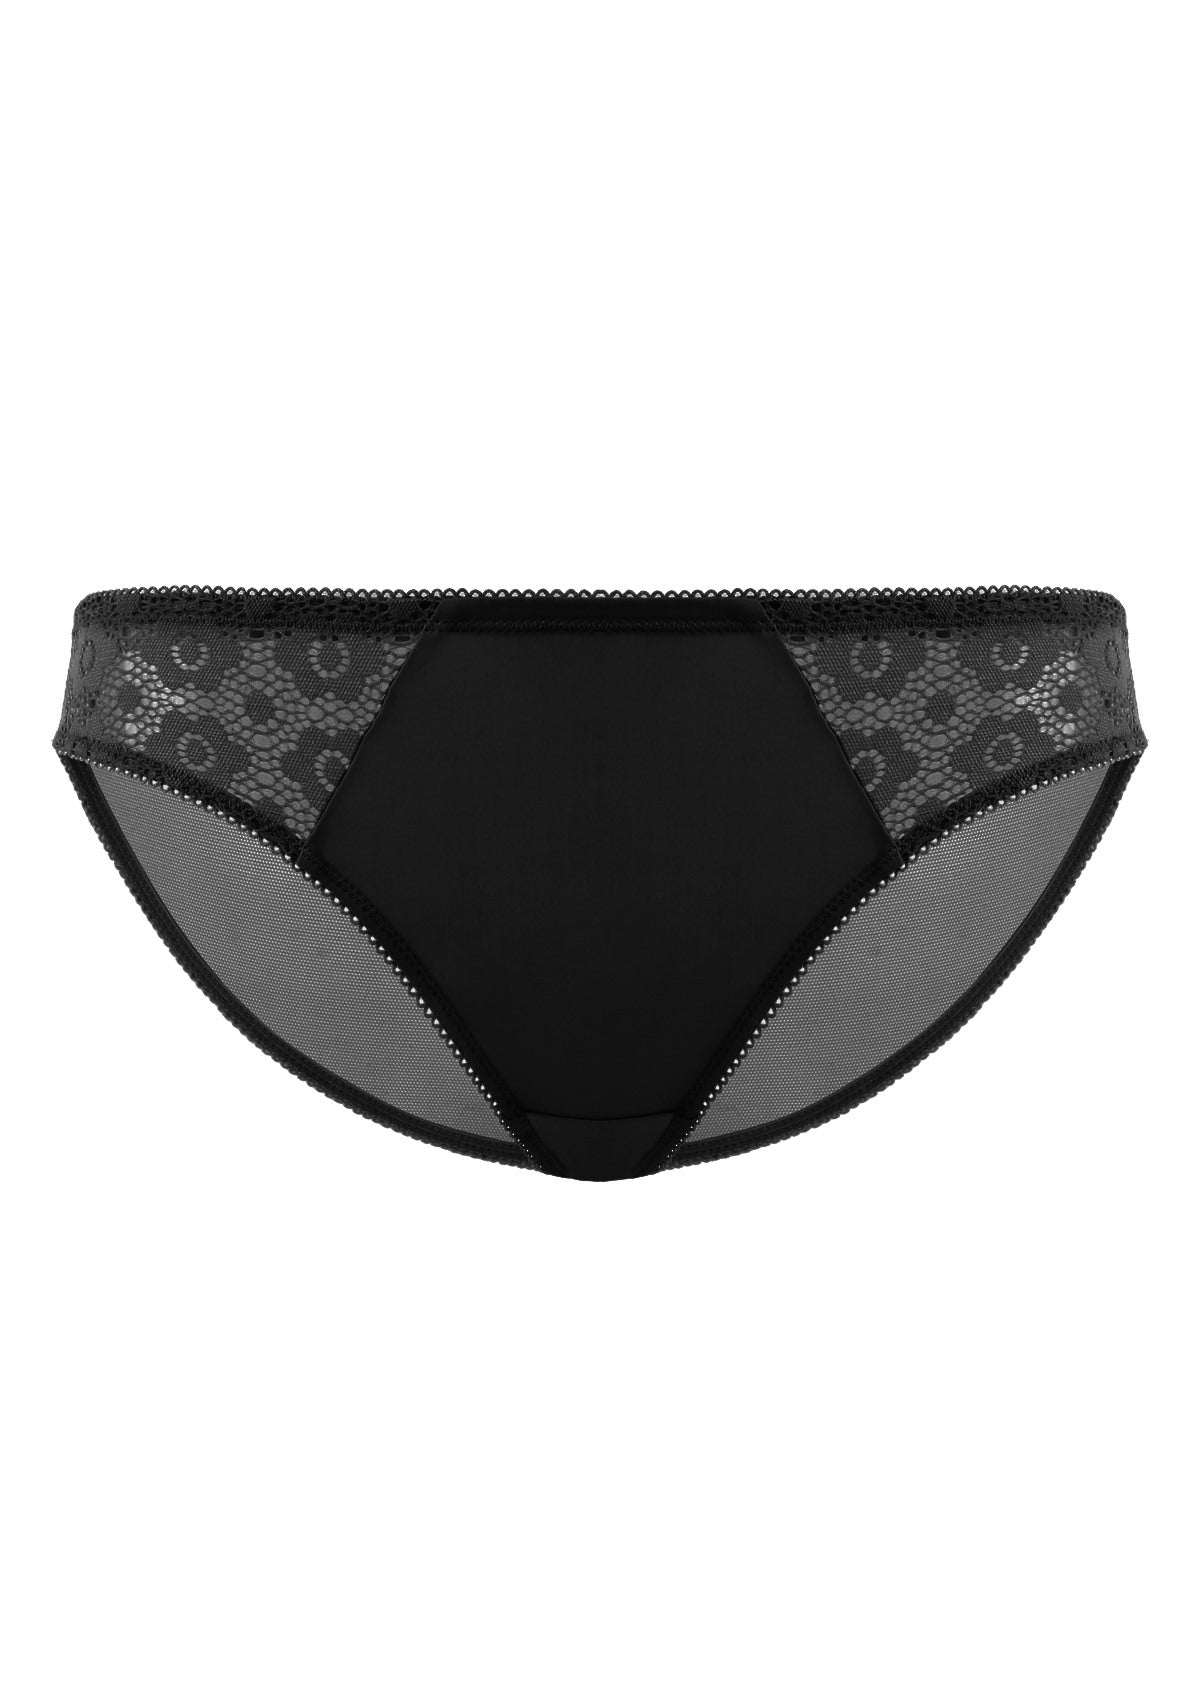 HSIA Serena Comfortable Trendy Lace Trim Bikini Underwear - M / Black